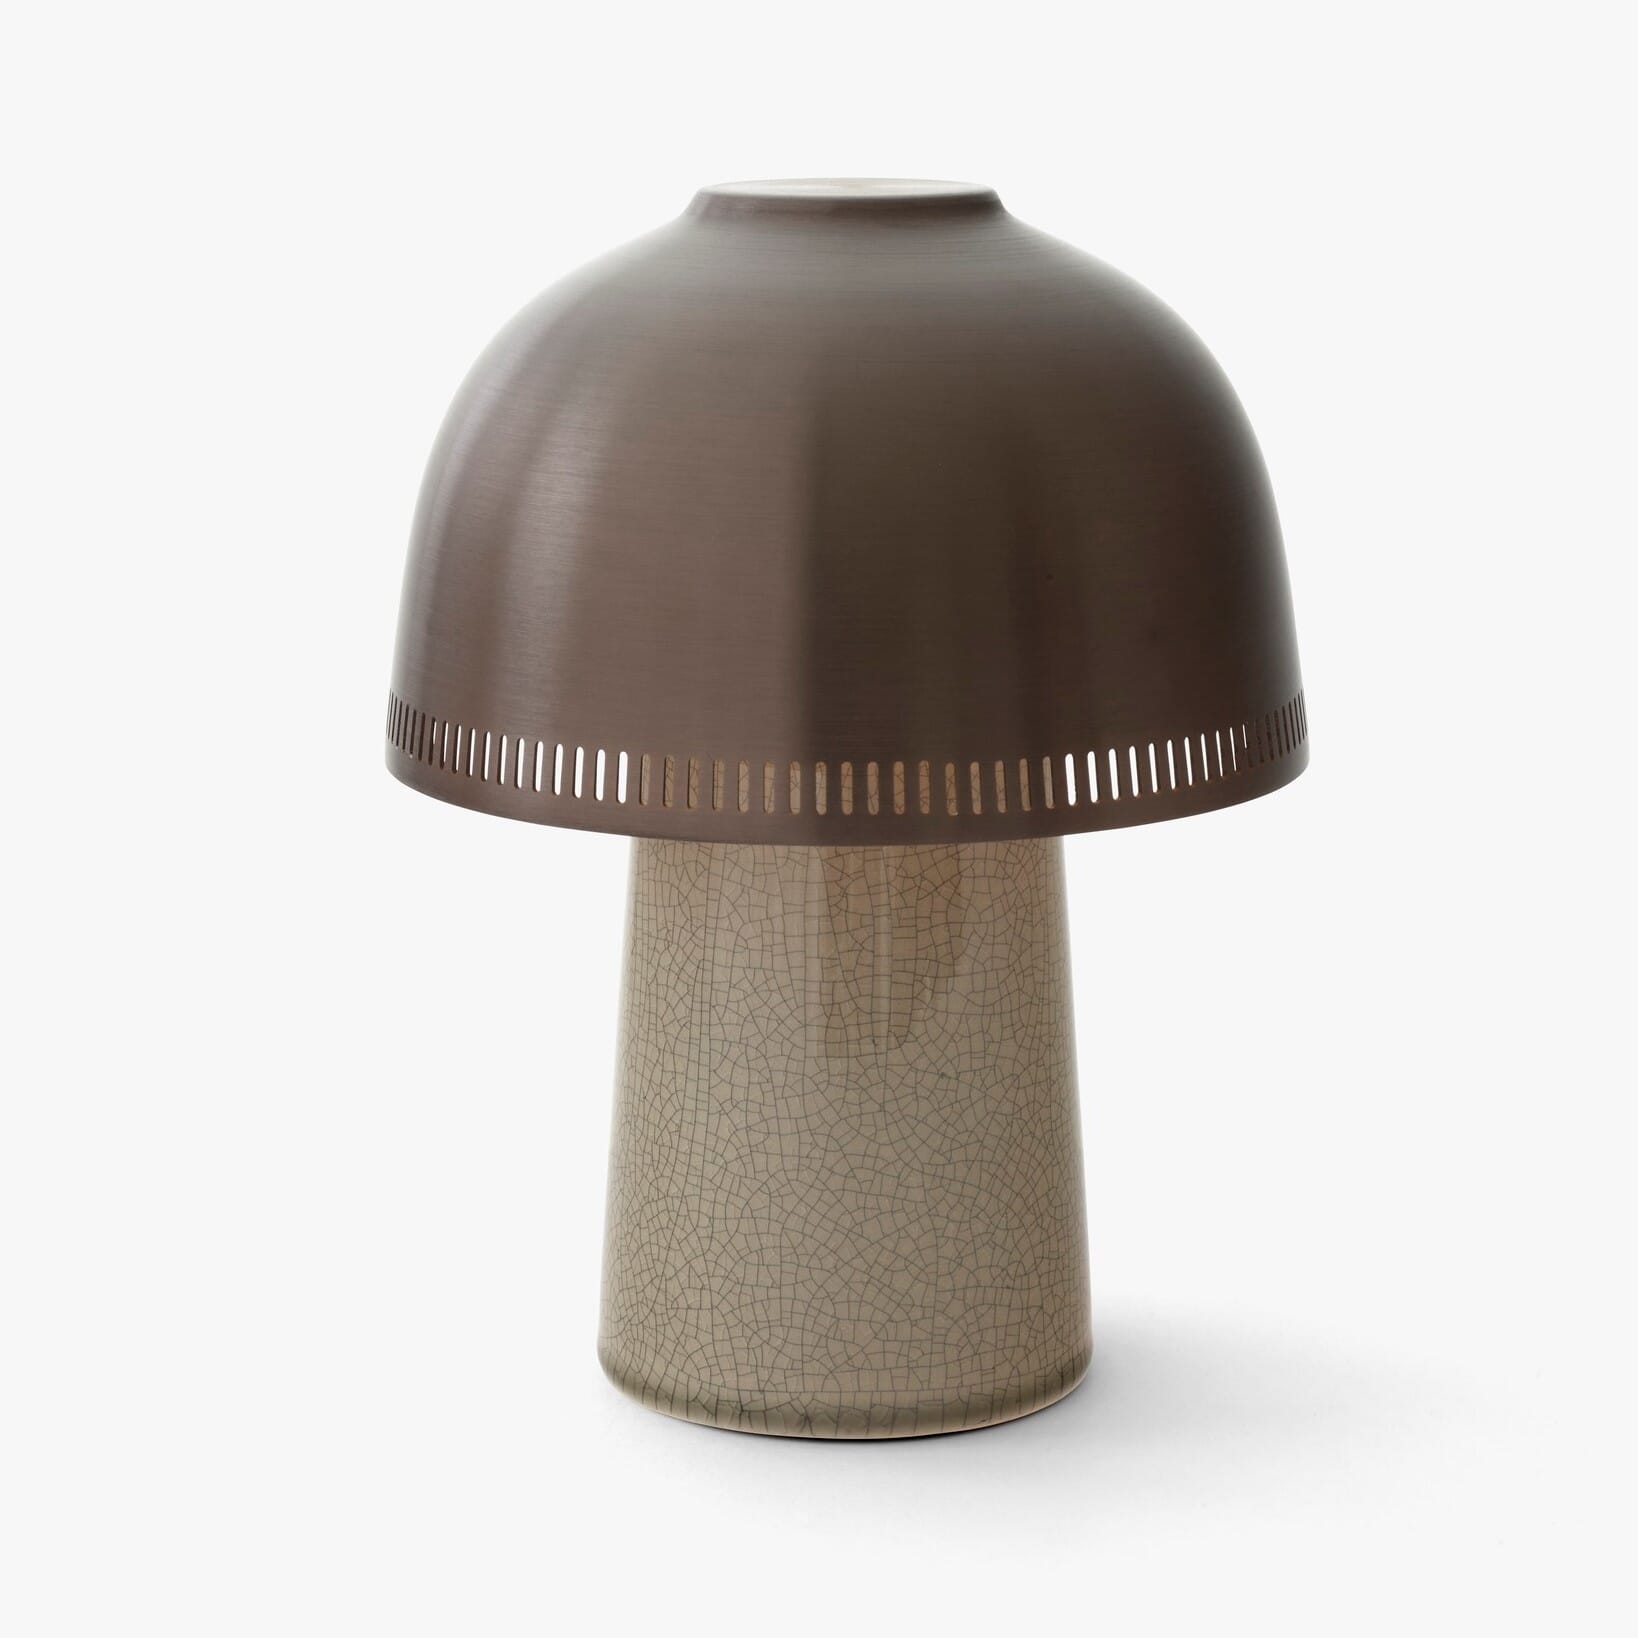 &tradition - &tradition Raku Oppladbar Lampe SH8 Beige Grey & Bronzed - Lunehjem.no - Interiør på nett